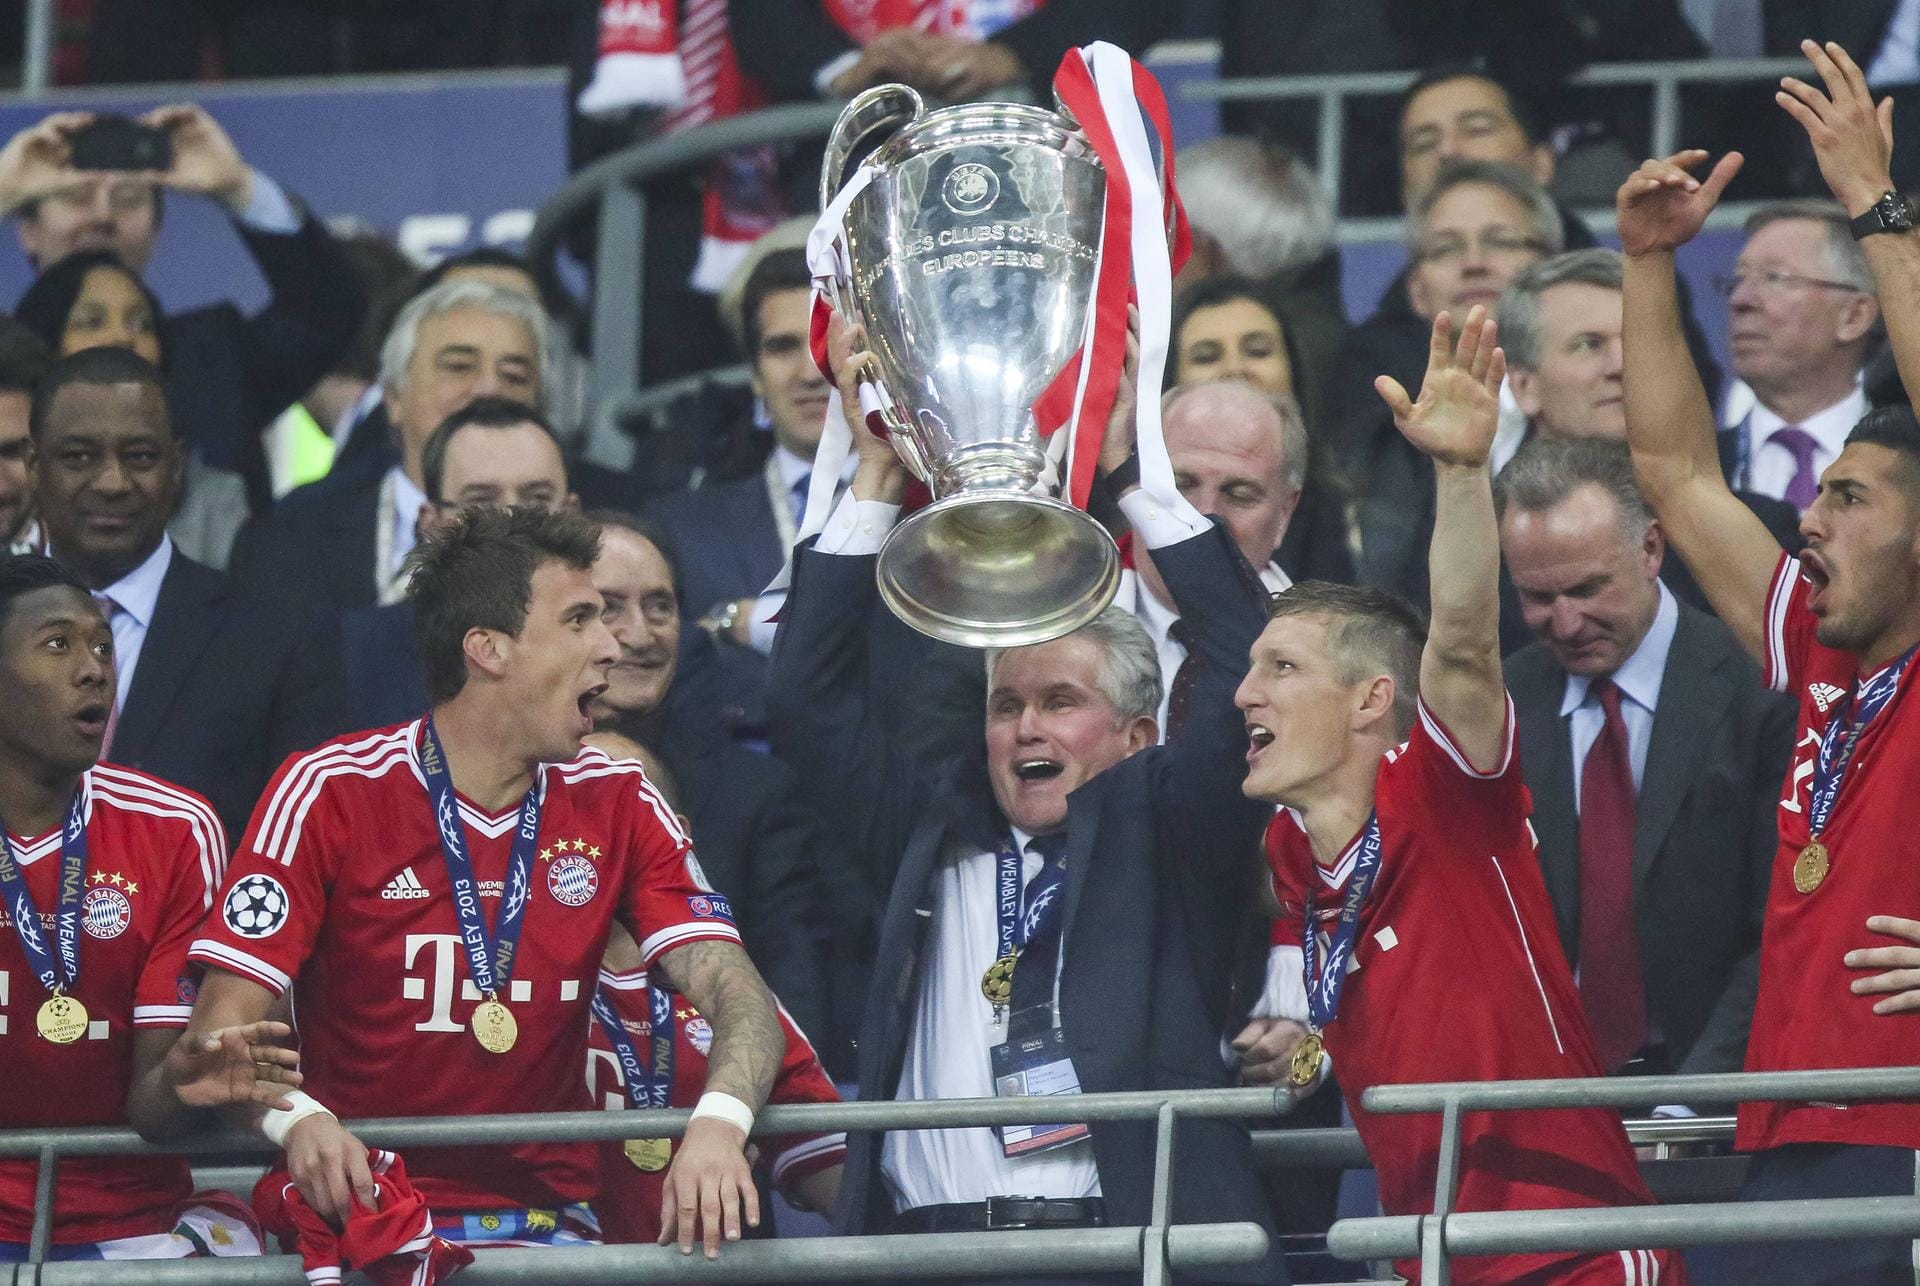 01.07.2011 bis 30.06.2013: Jupp Heynckes. Erfolge: Das legendäre "Triple" 2013 – Champions-League-Sieger, Deutscher Meister und DFB-Pokalsieger.